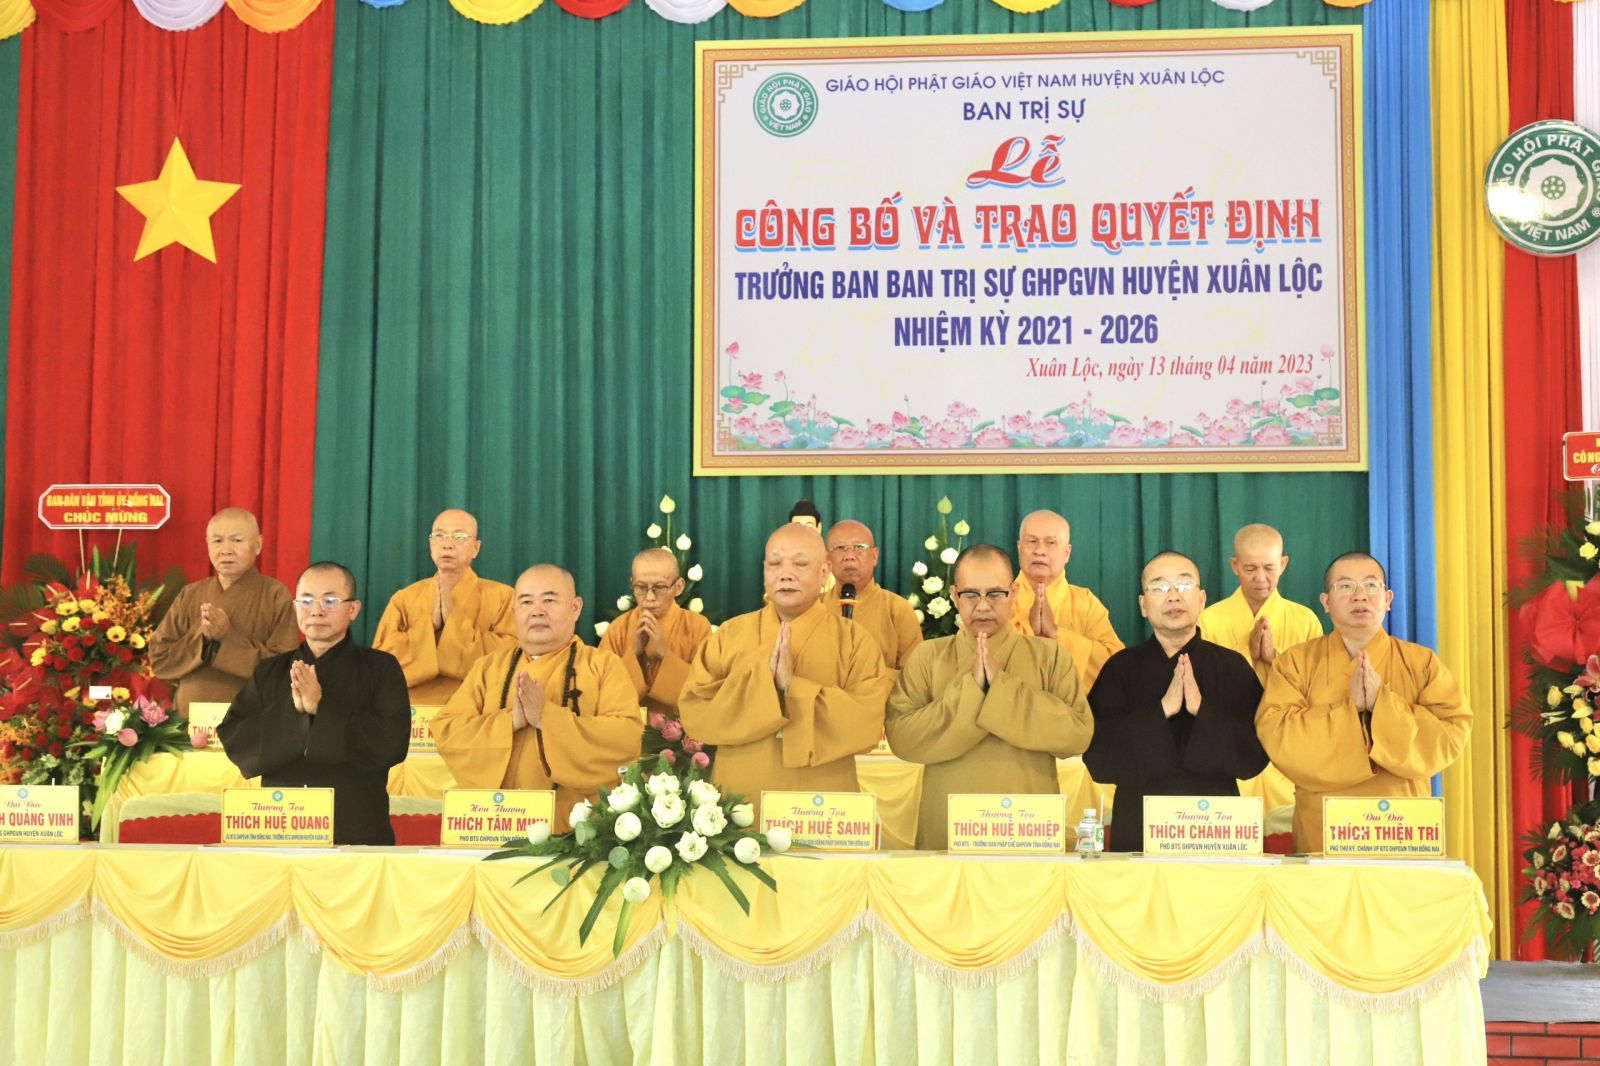 Đồng Nai: Lễ công bố và trao quyết định bổ nhiệm Trưởng ban BTS GHPGVN huyện Xuân Lộc, nhiệm kỳ 2021 – 2026